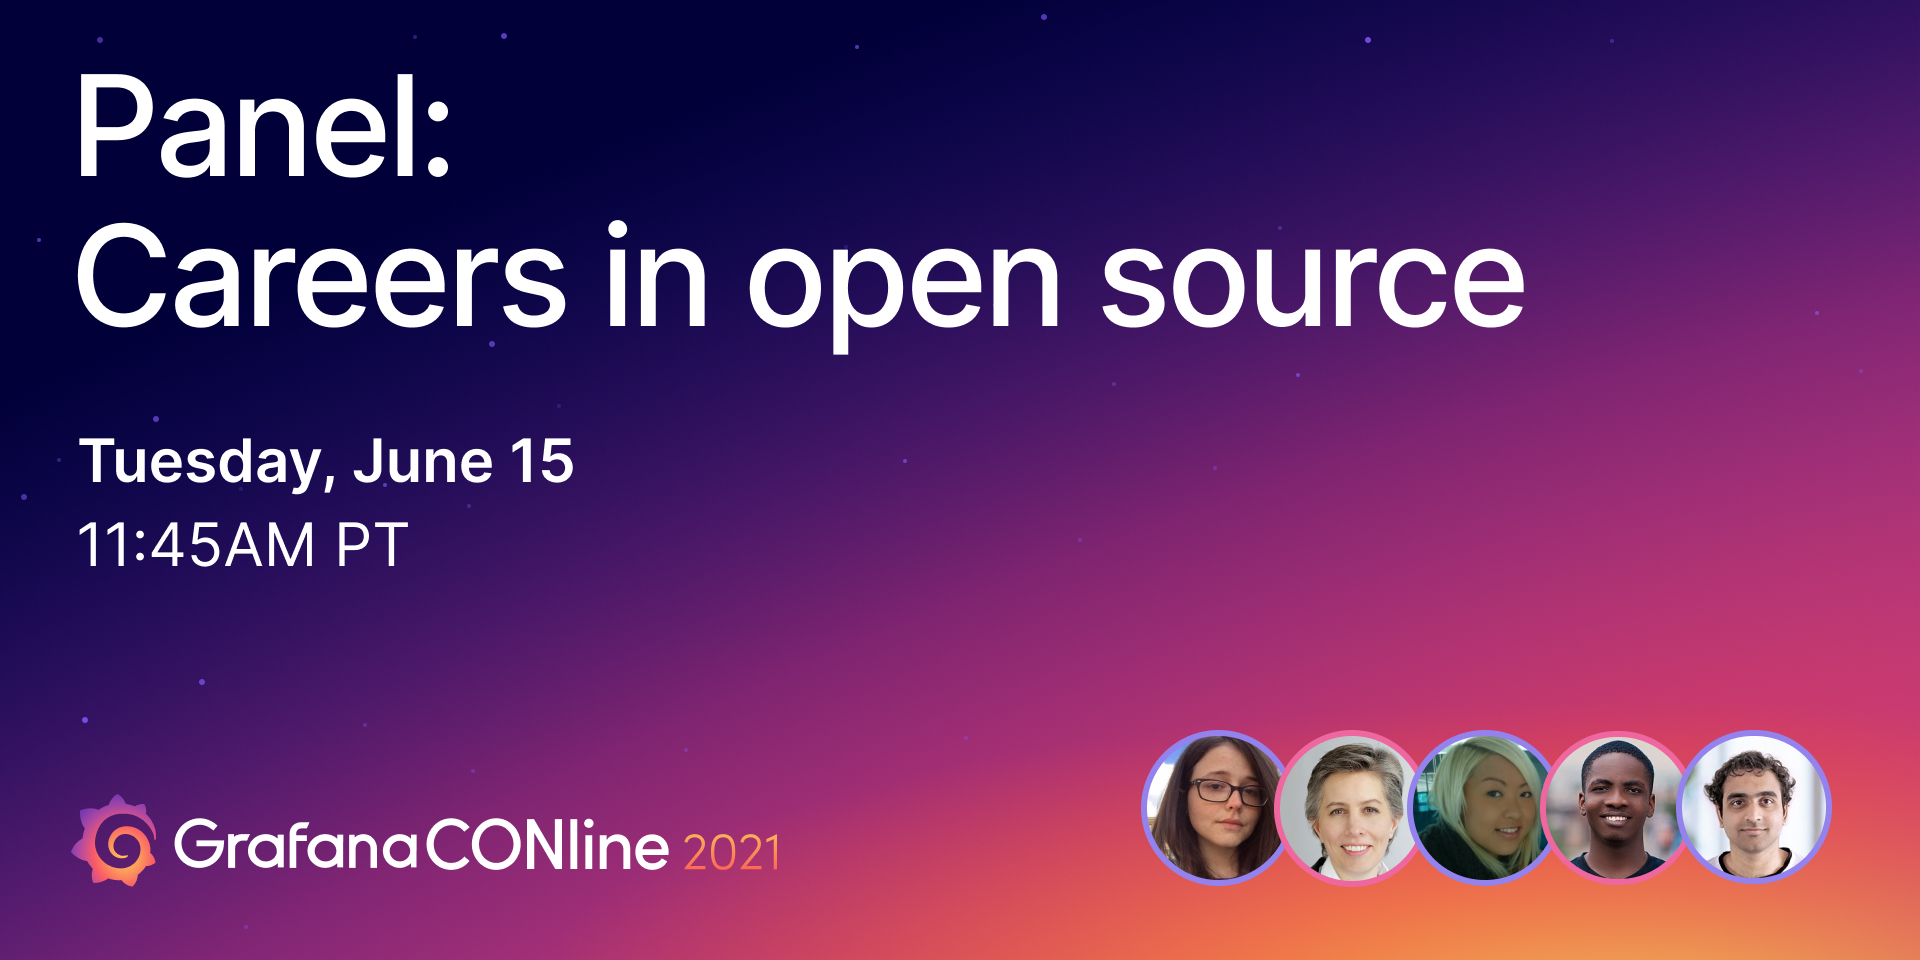 Panel: Careers in open source